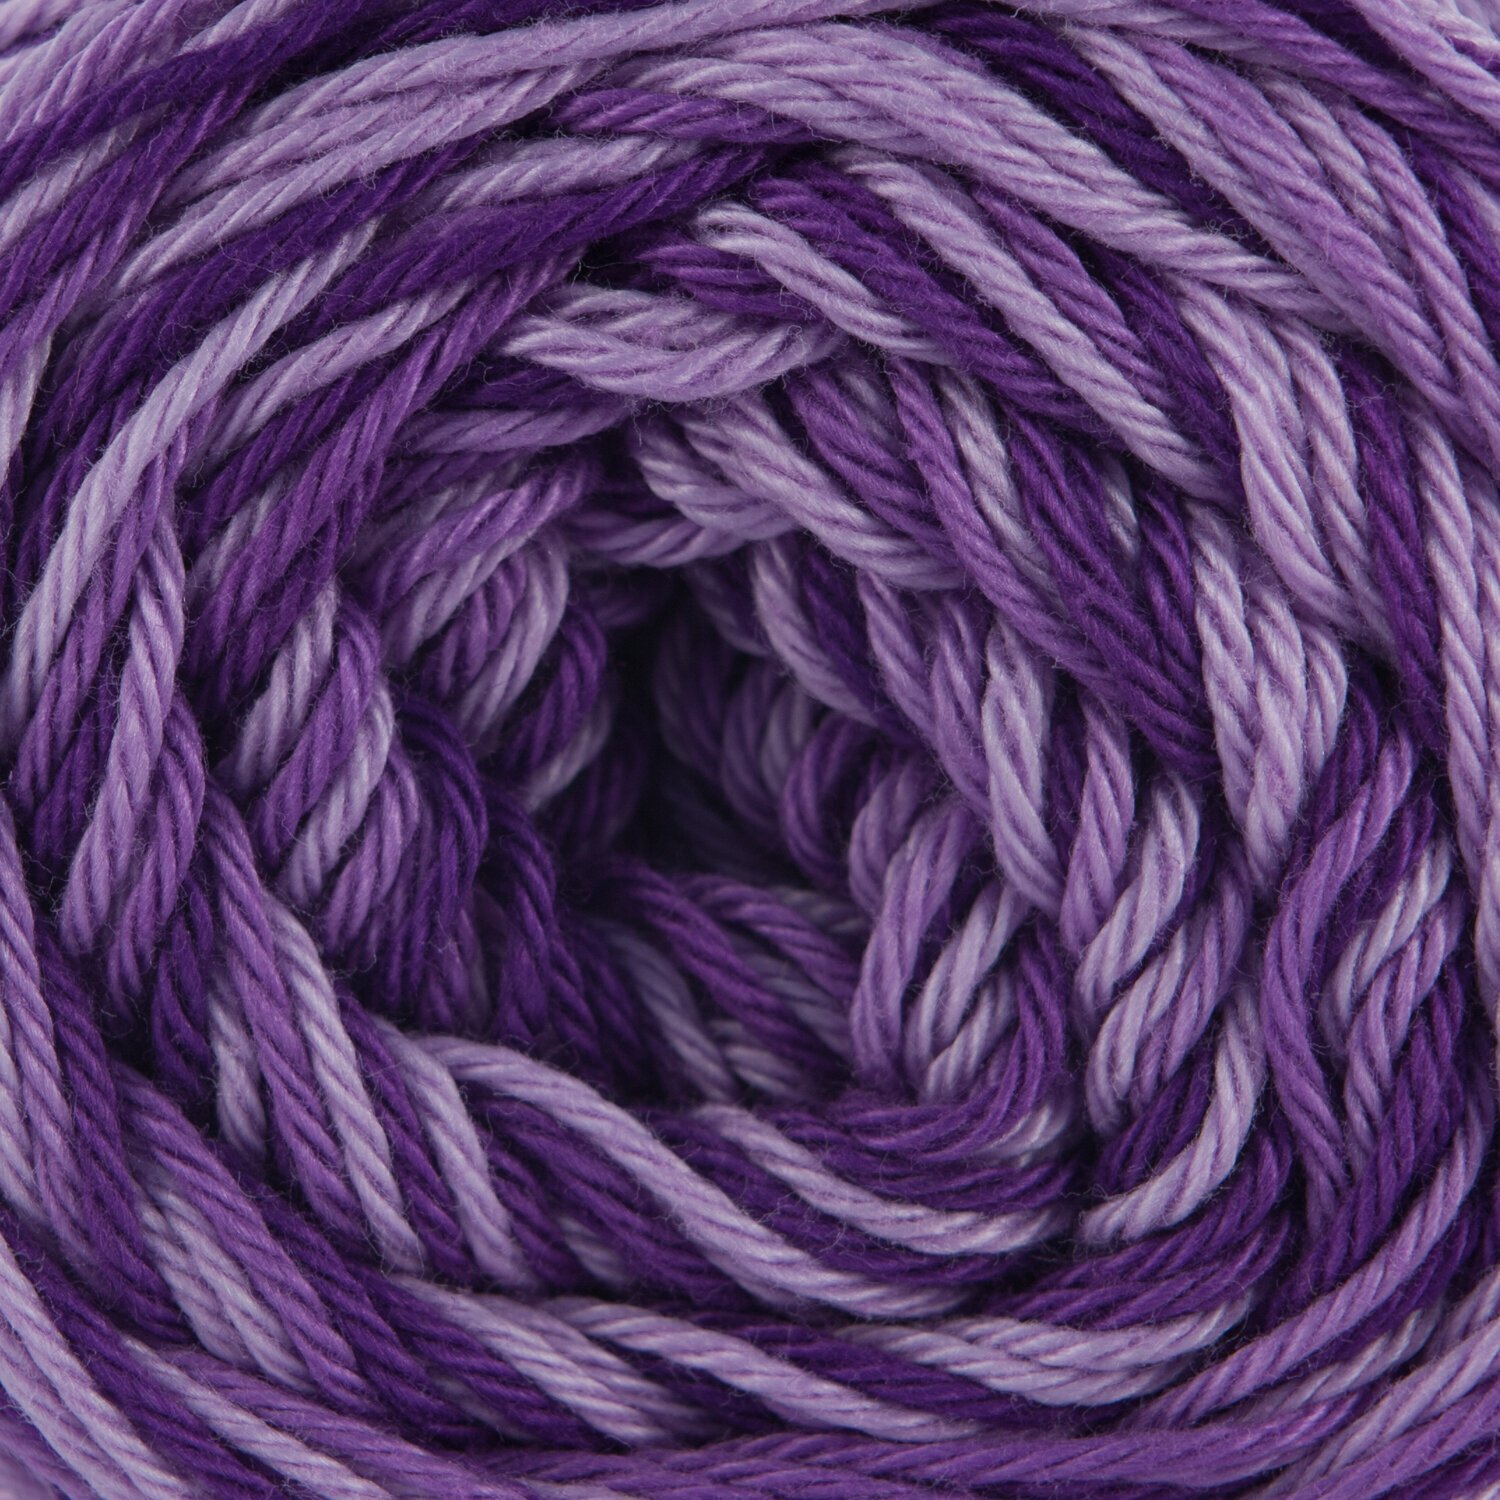 Knitting Yarn Nitarna Ceska Trebova Katka Ombre 43272 Violet